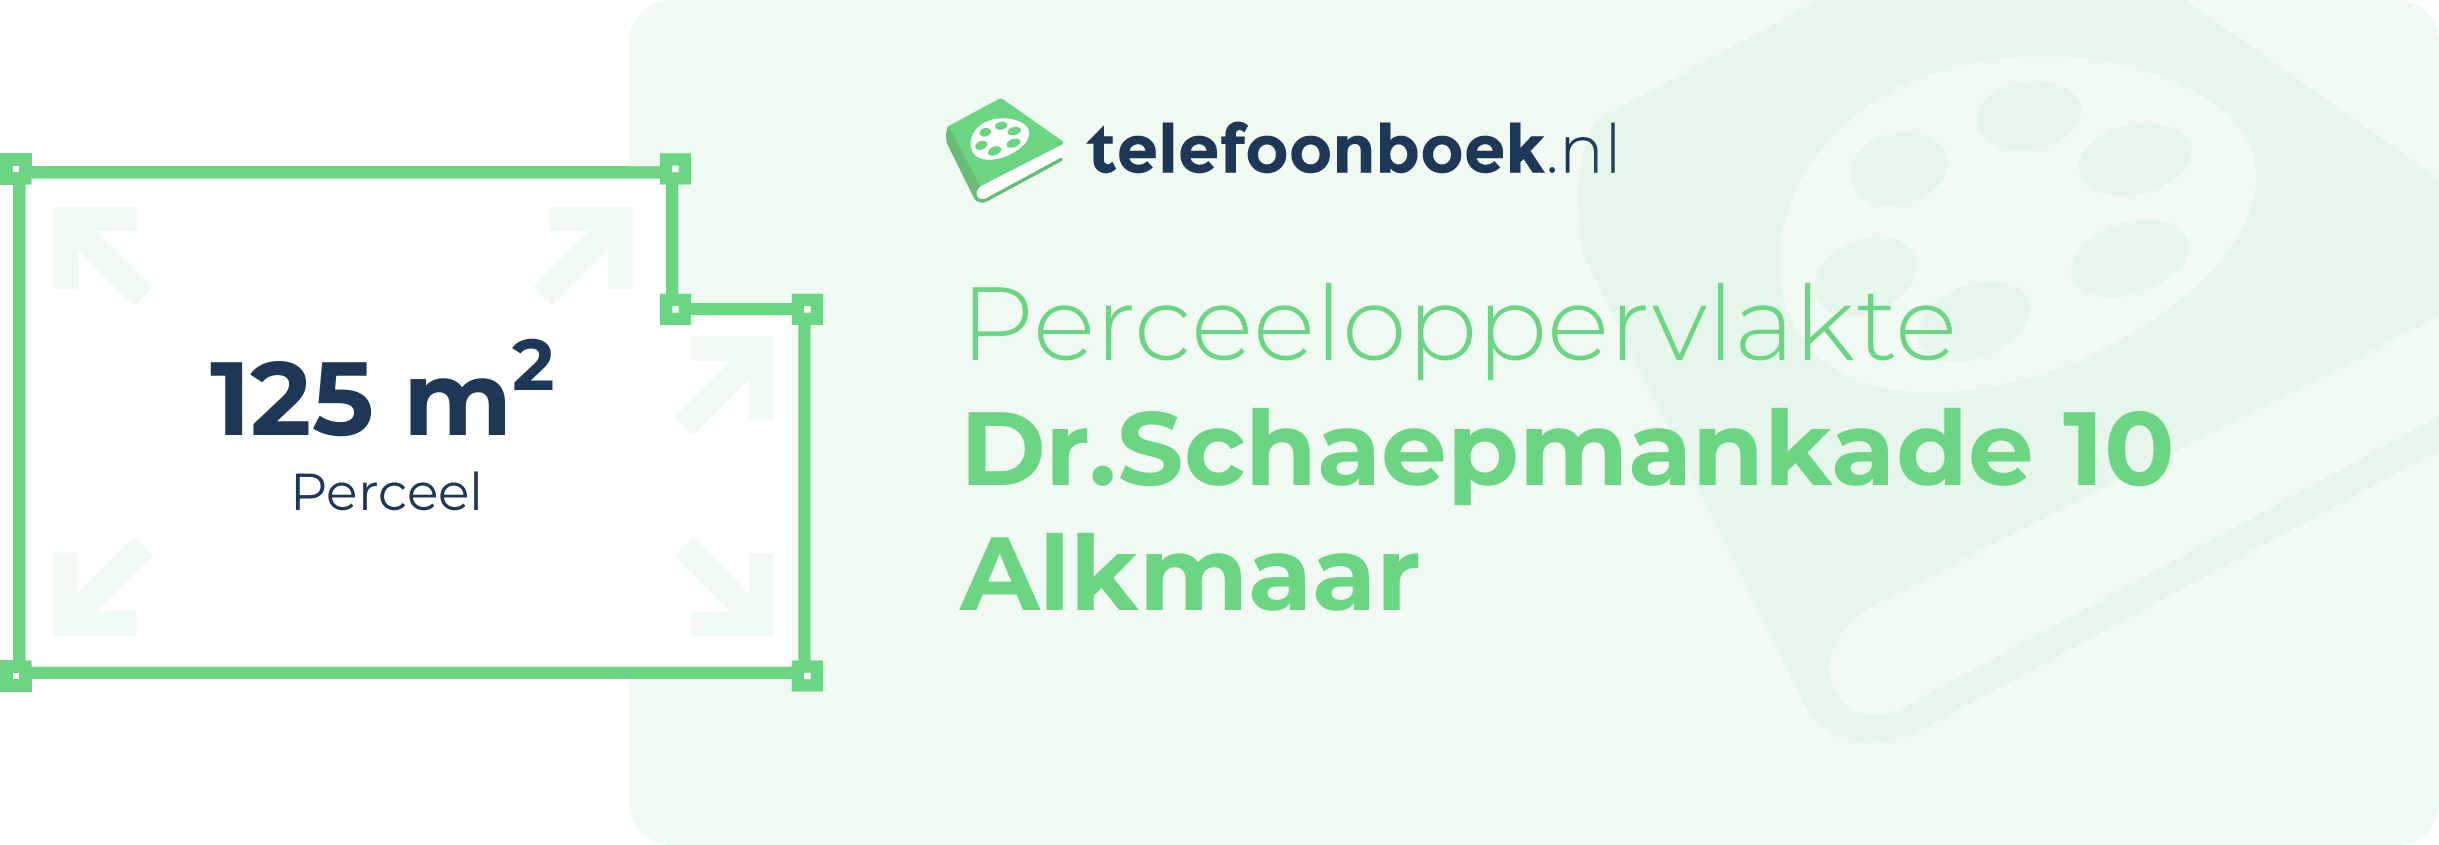 Perceeloppervlakte Dr.Schaepmankade 10 Alkmaar